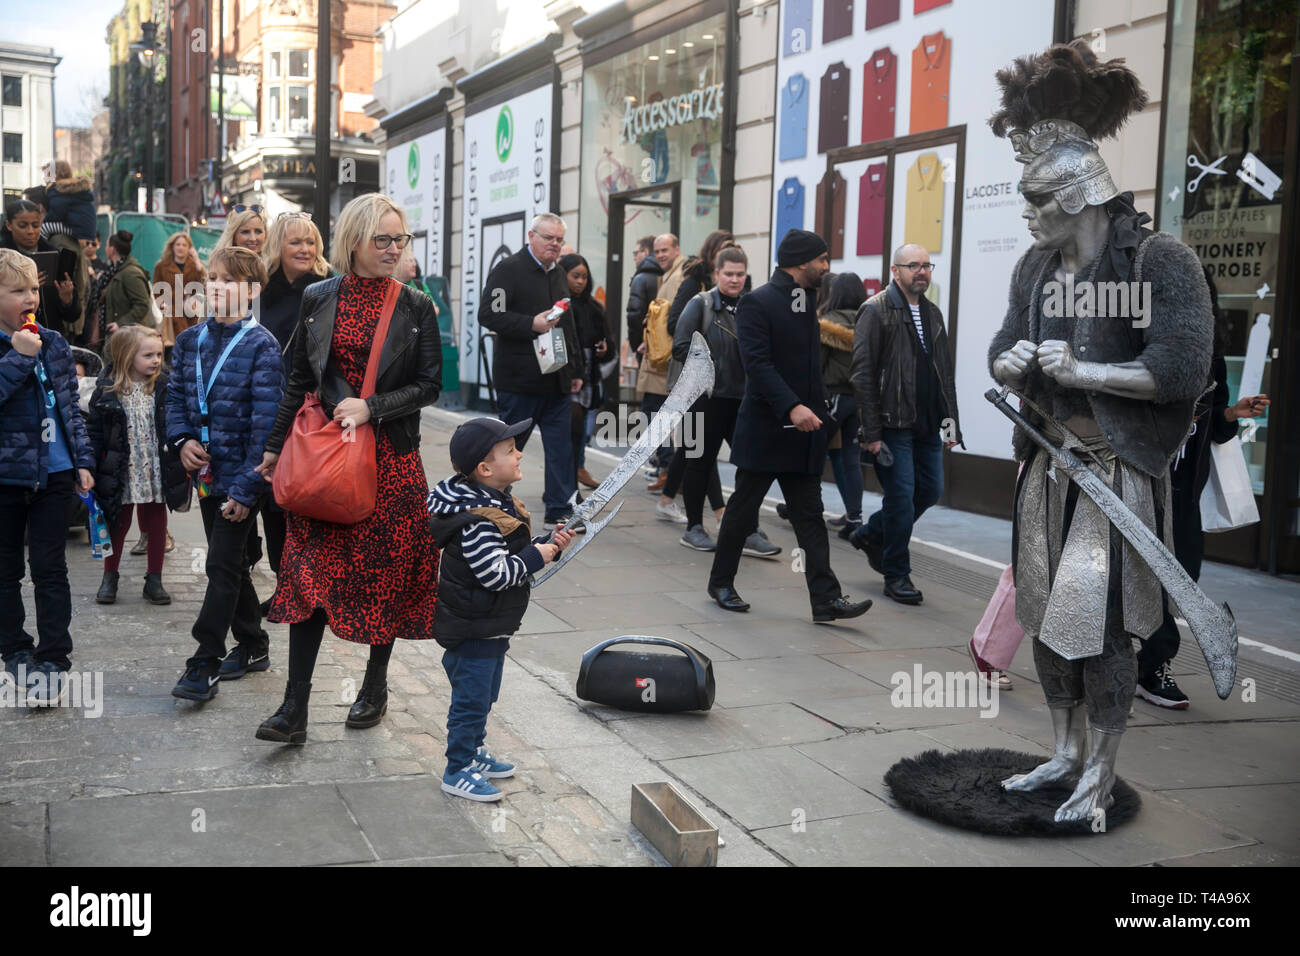 Londra - 17 febbraio 2019: Street attore in costume gladiator pone con i passanti per la fotografia Foto Stock